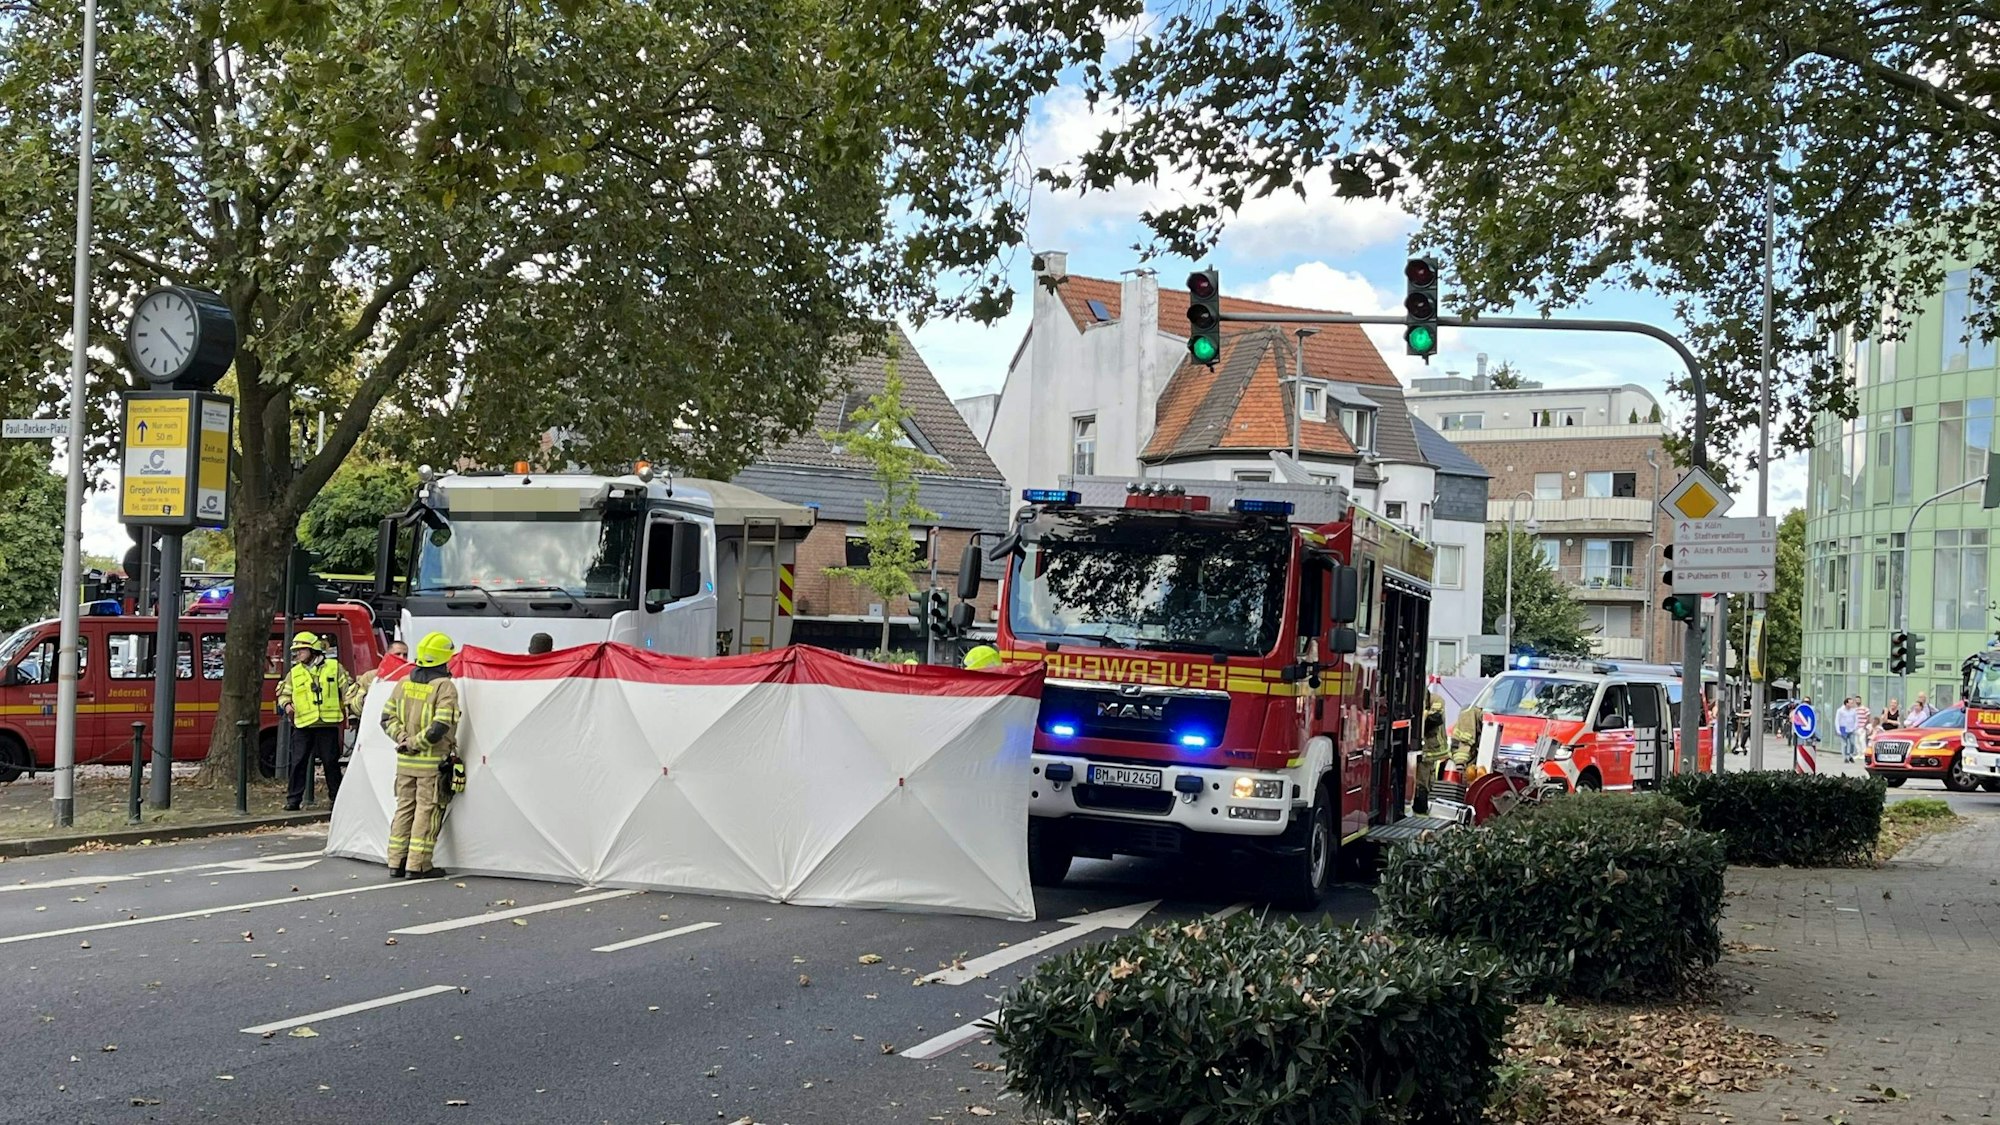 Einsatzfahrzeuge von Feuerwehr und Rettungsdienst stehen auf der Straße, quer über die Fahrbahn wurde ein Sichtschutz aufgestellt.